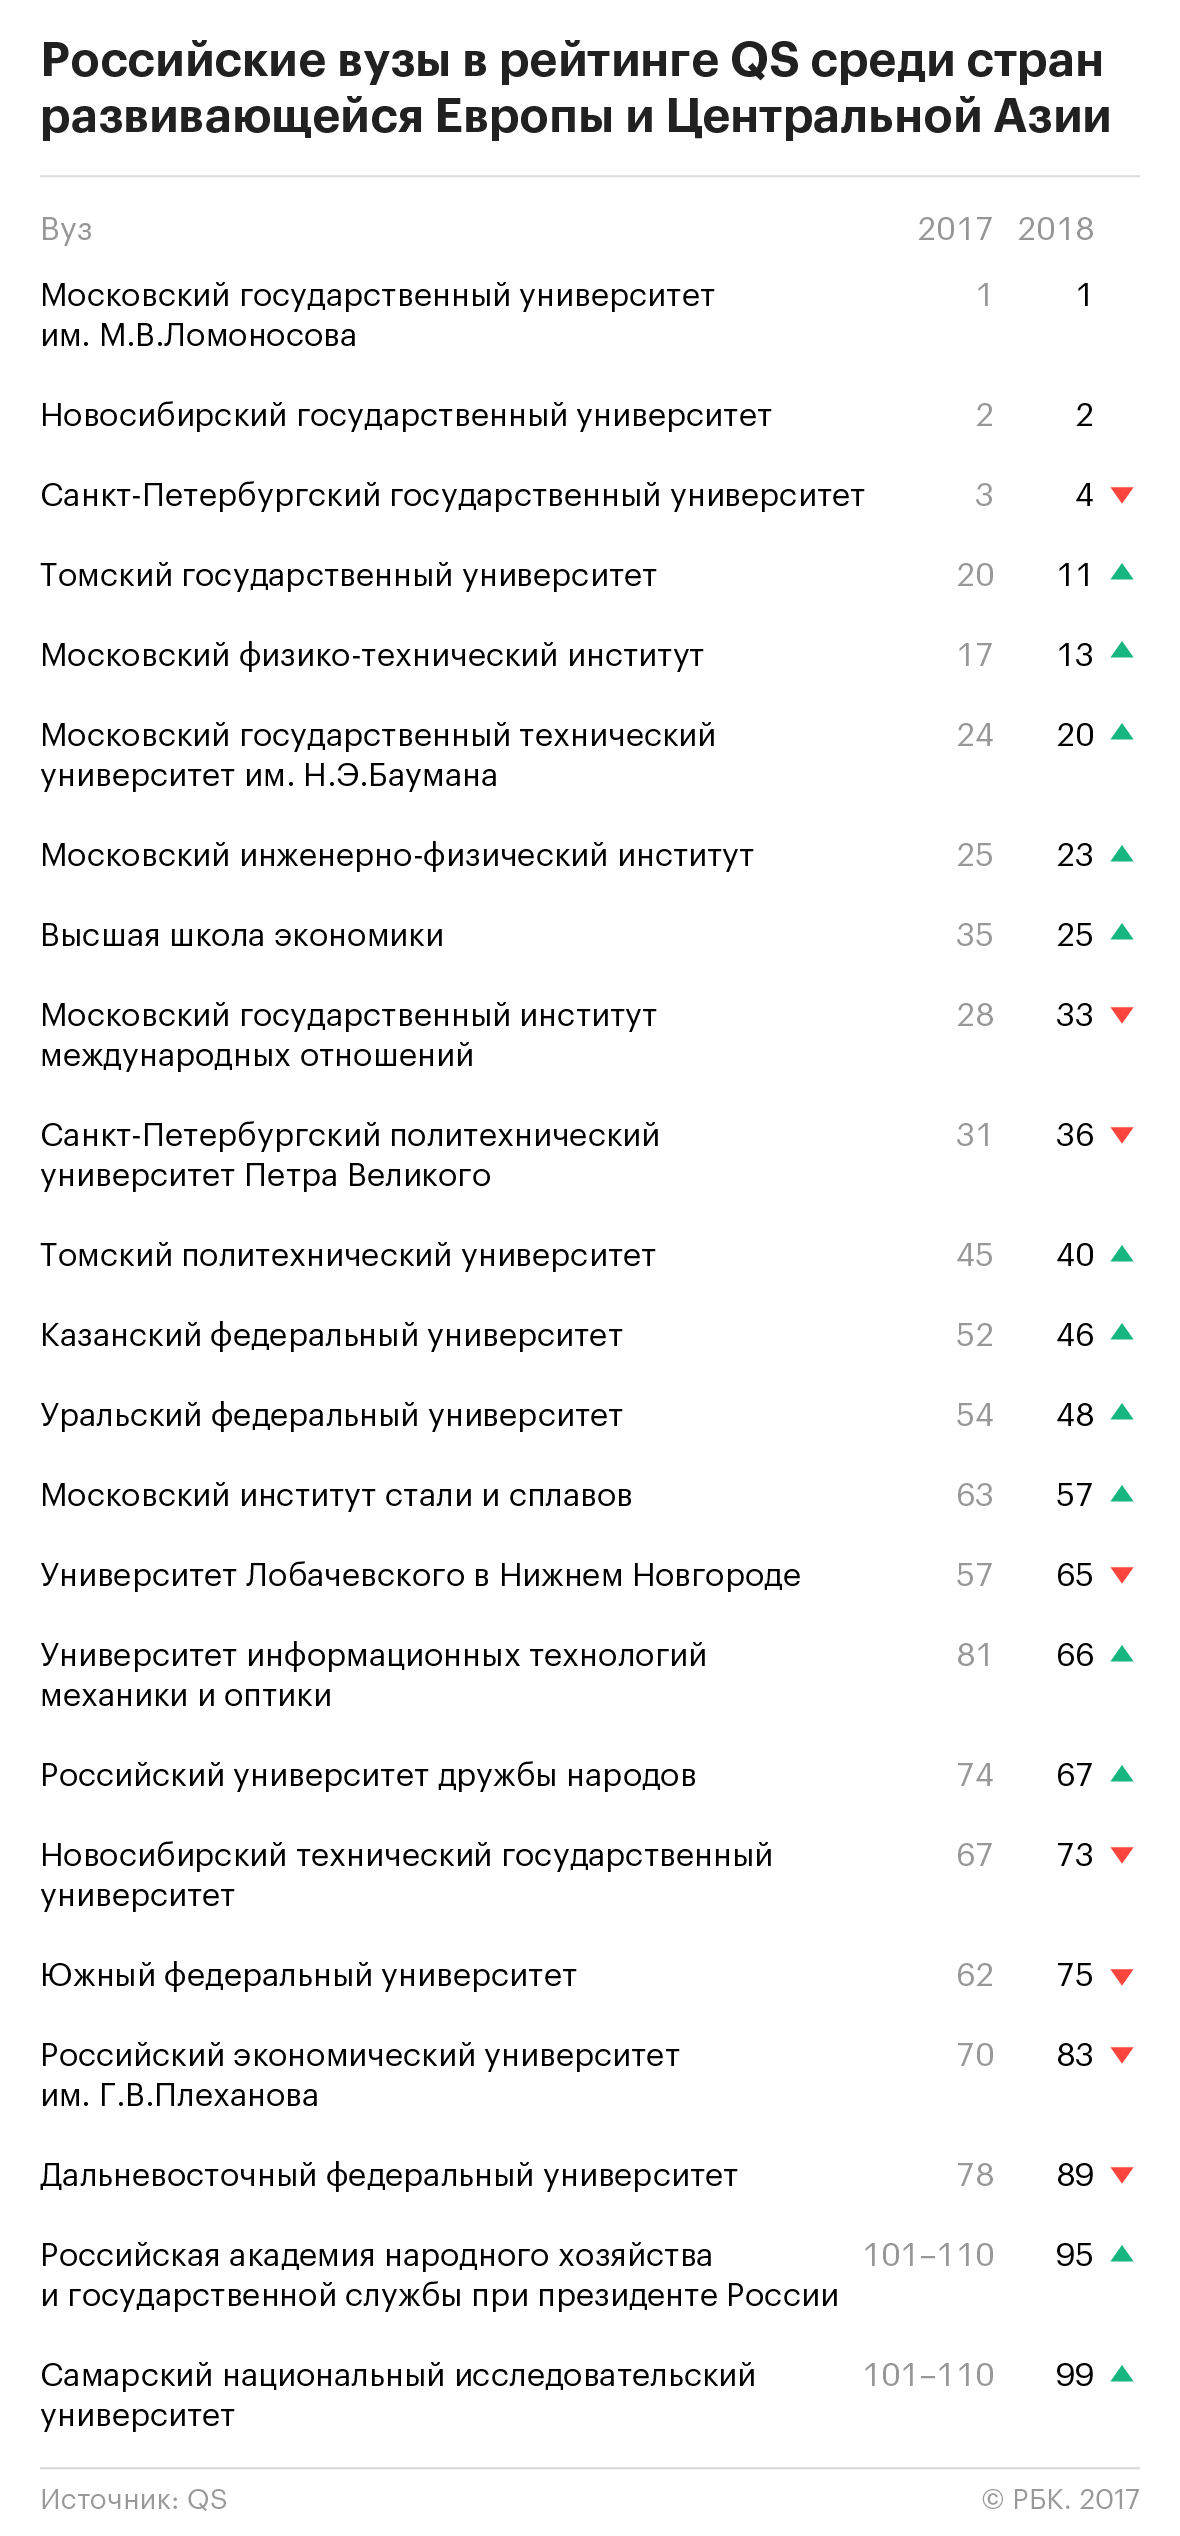 МГУ возглавил региональный рейтинг вузов QS